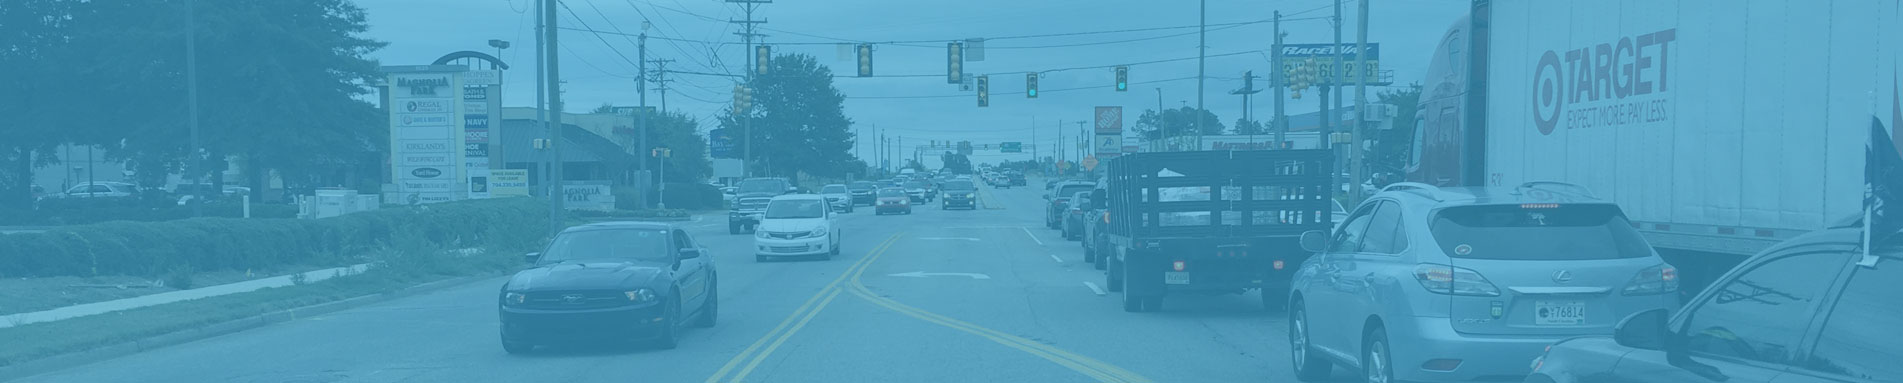 Traffic on Woodruff Road in Greenville, SC